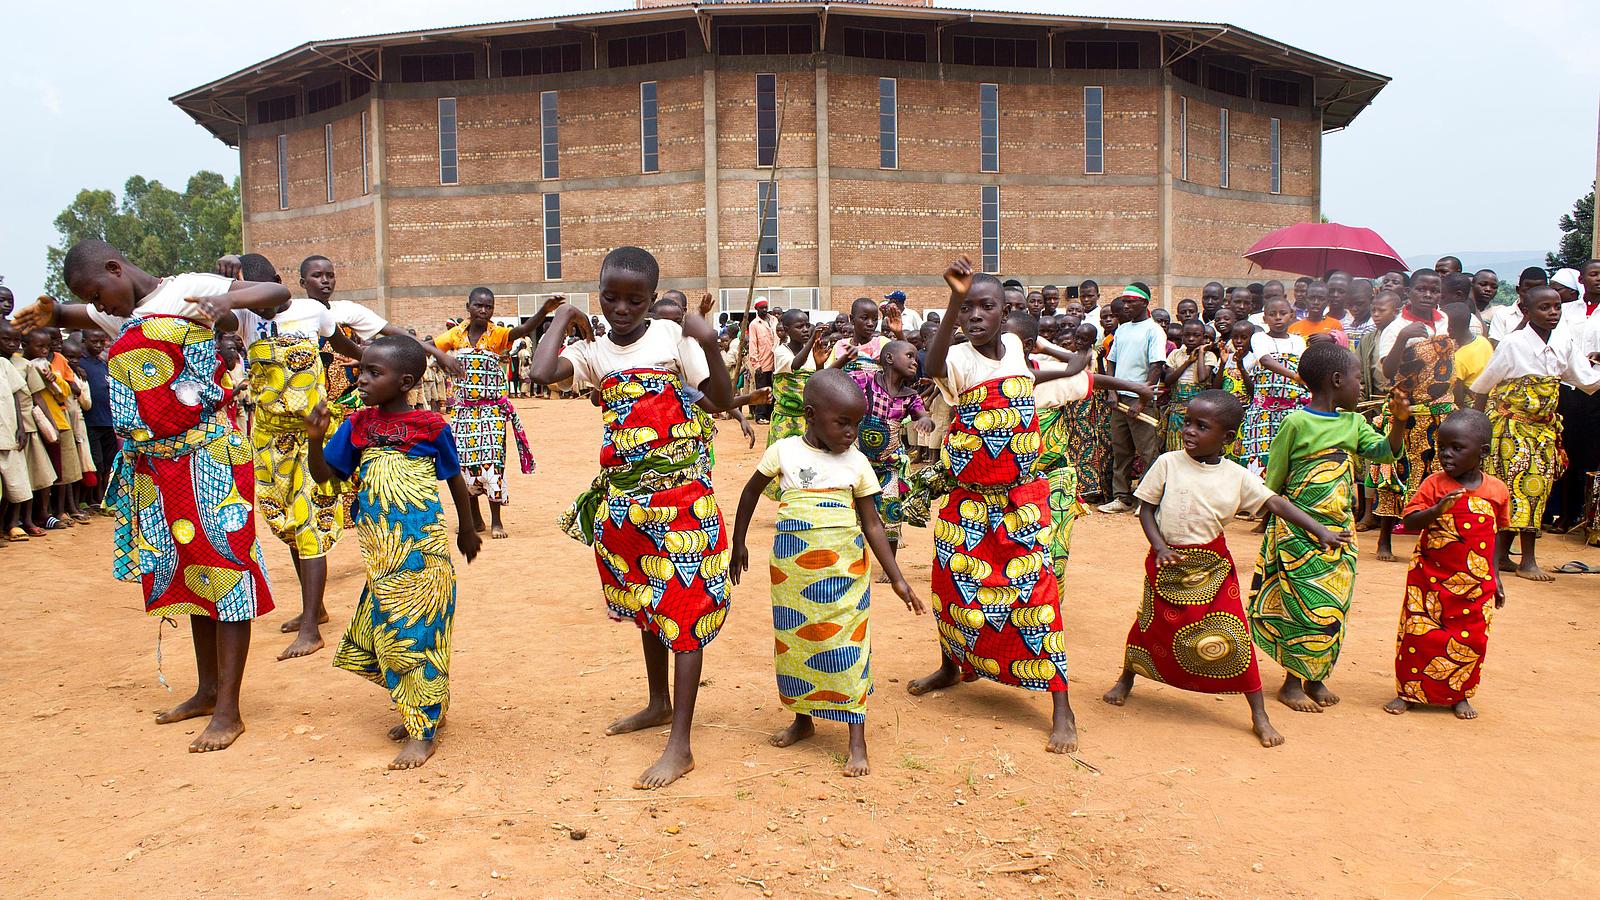 Tanzende Kinder aus Burundi